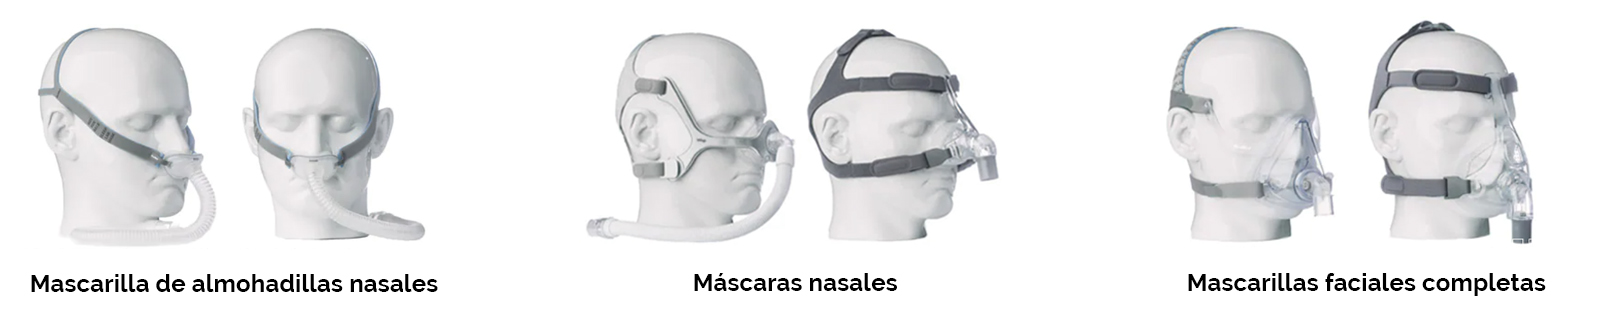 tipos de mascaras cpap para apnea respiratoria